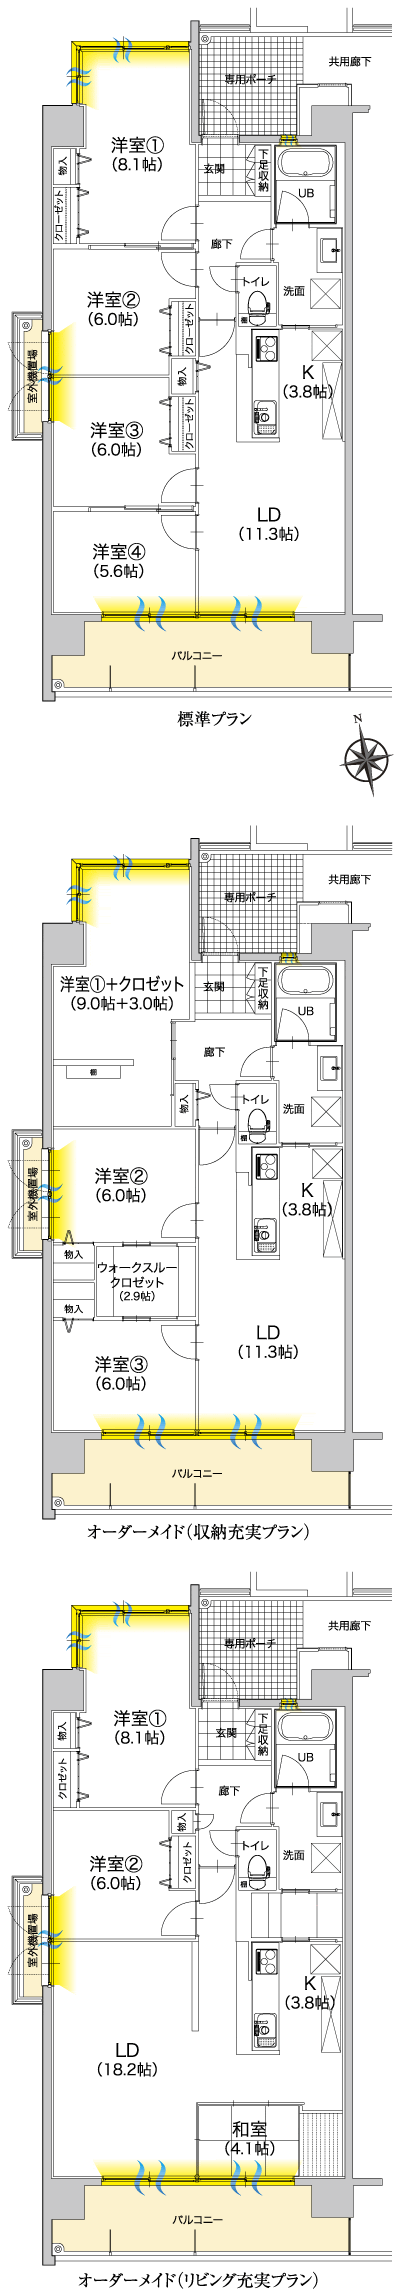 Floor: 4LDK, occupied area: 87.44 sq m, Price: 23.6 million yen ~ 27,100,000 yen